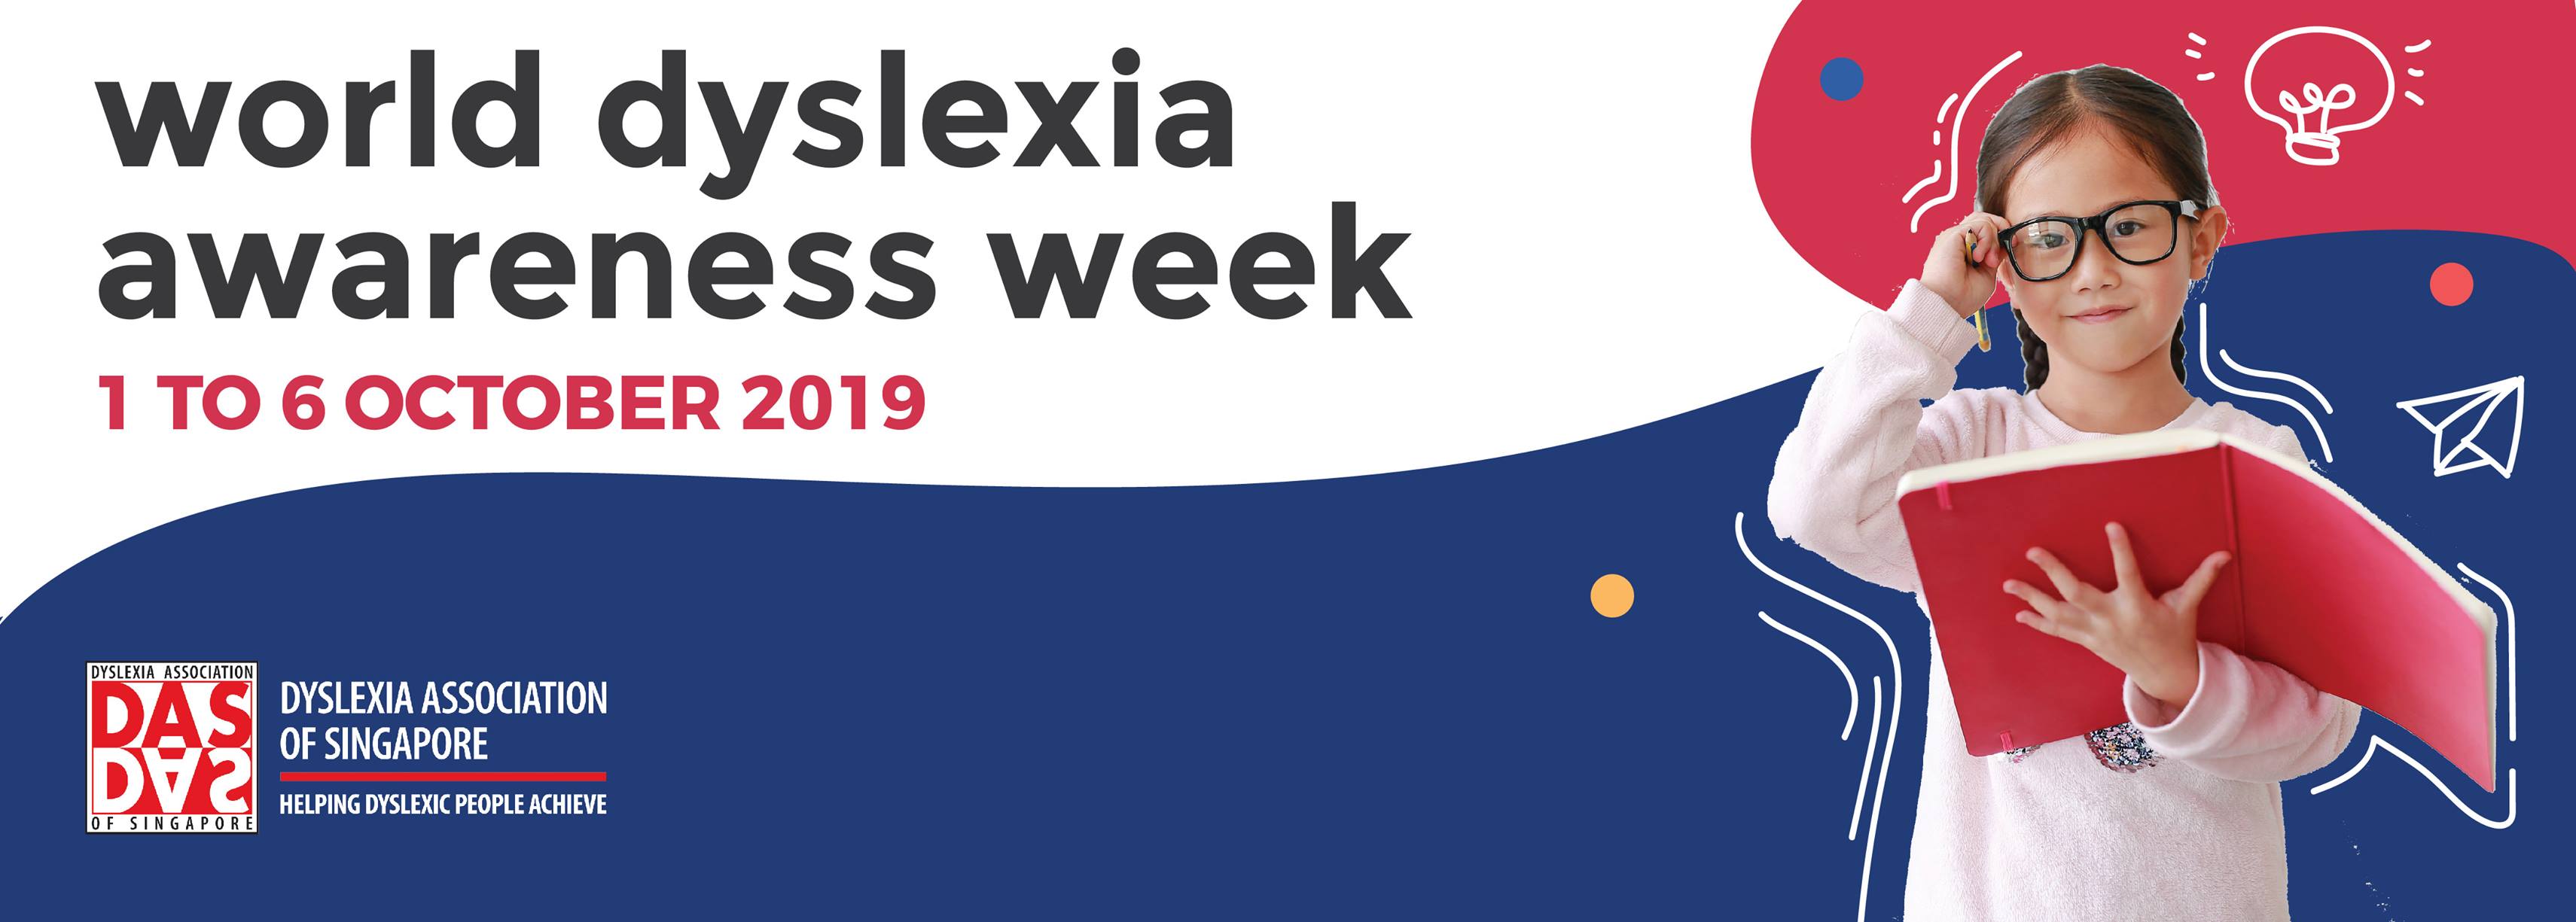 DAS - World Dyslexia Awareness Week 2019, Raffles Place, Central, Singapore